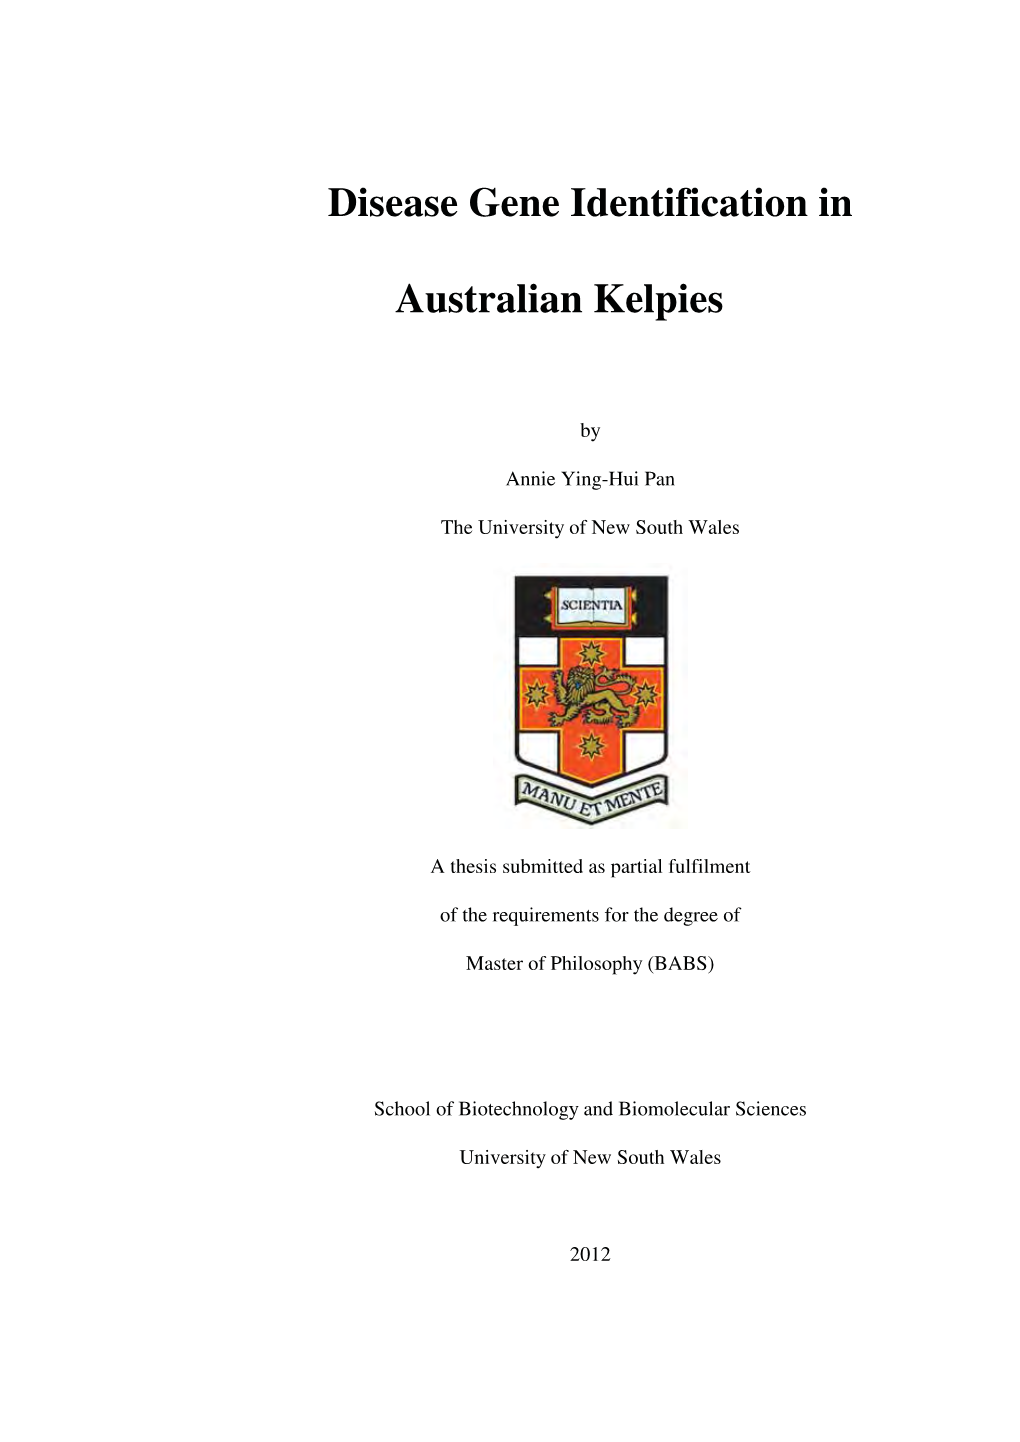 Disease Gene Identification in Australian Kelpies